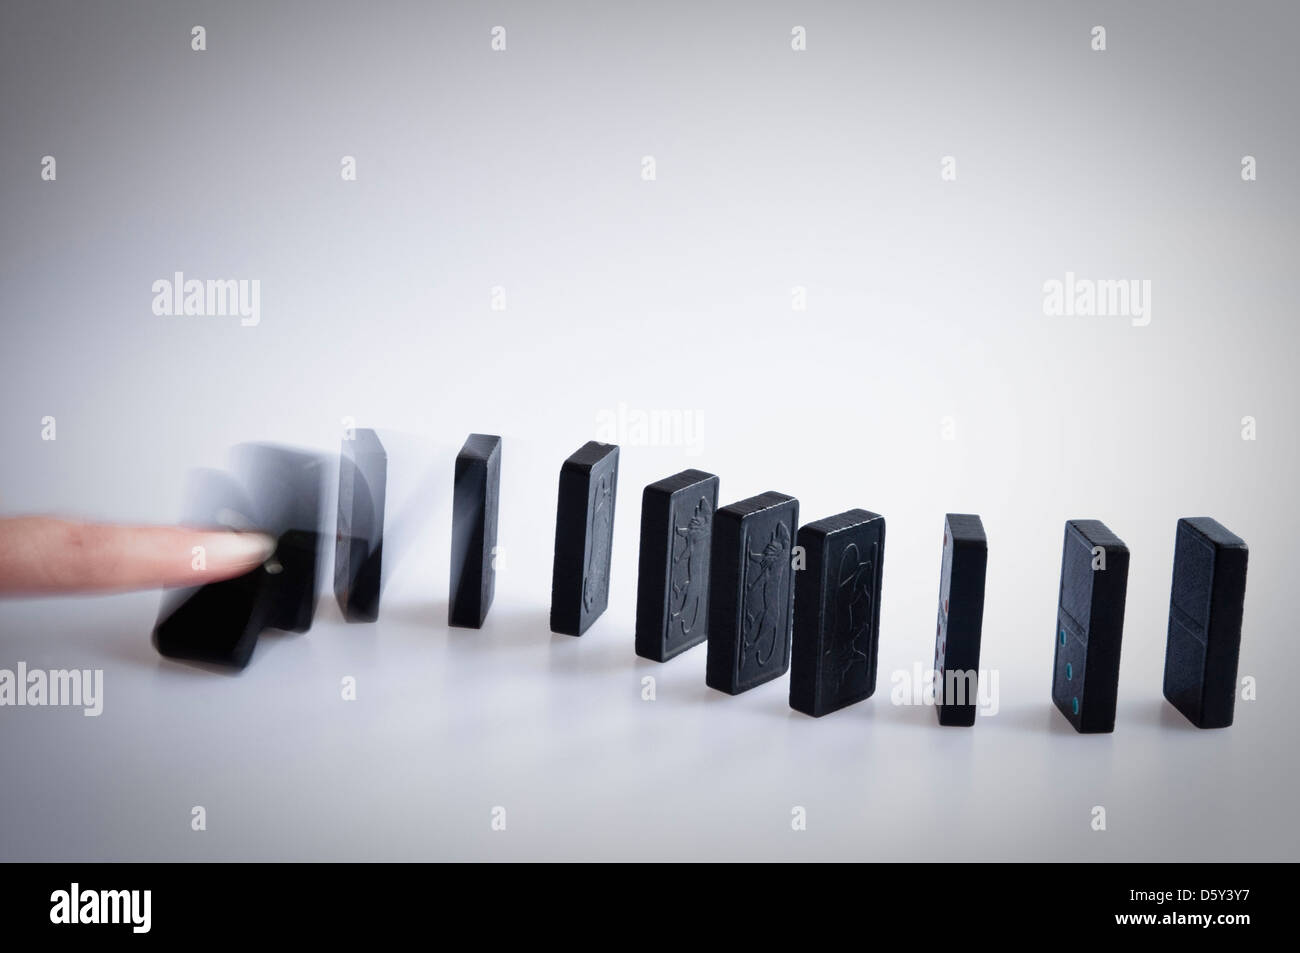 La chute des dominos - doigt poussant sur le premier domino et montrant le motion blur comme il tombe. Banque D'Images